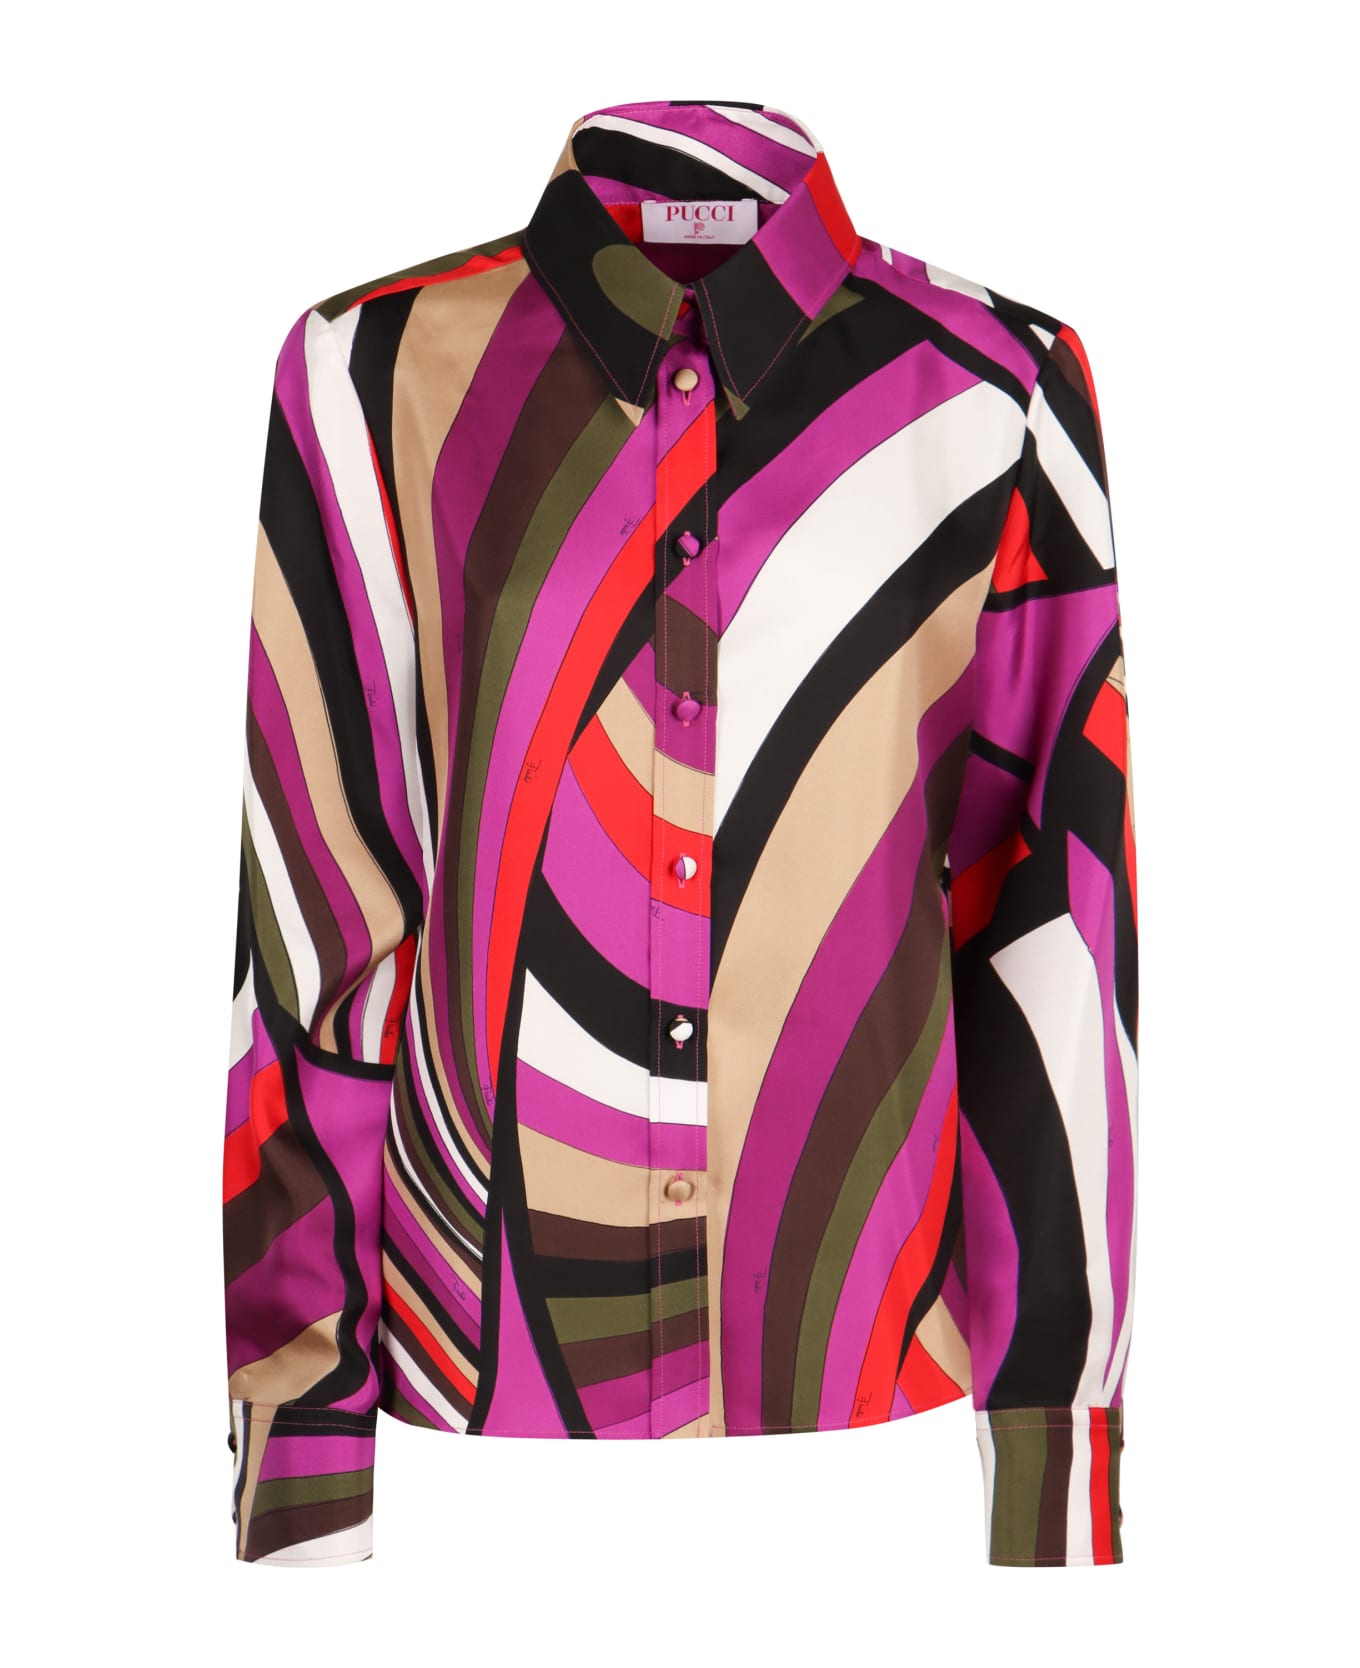 Pucci Printed Silk Shirt - Fuchsia シャツ